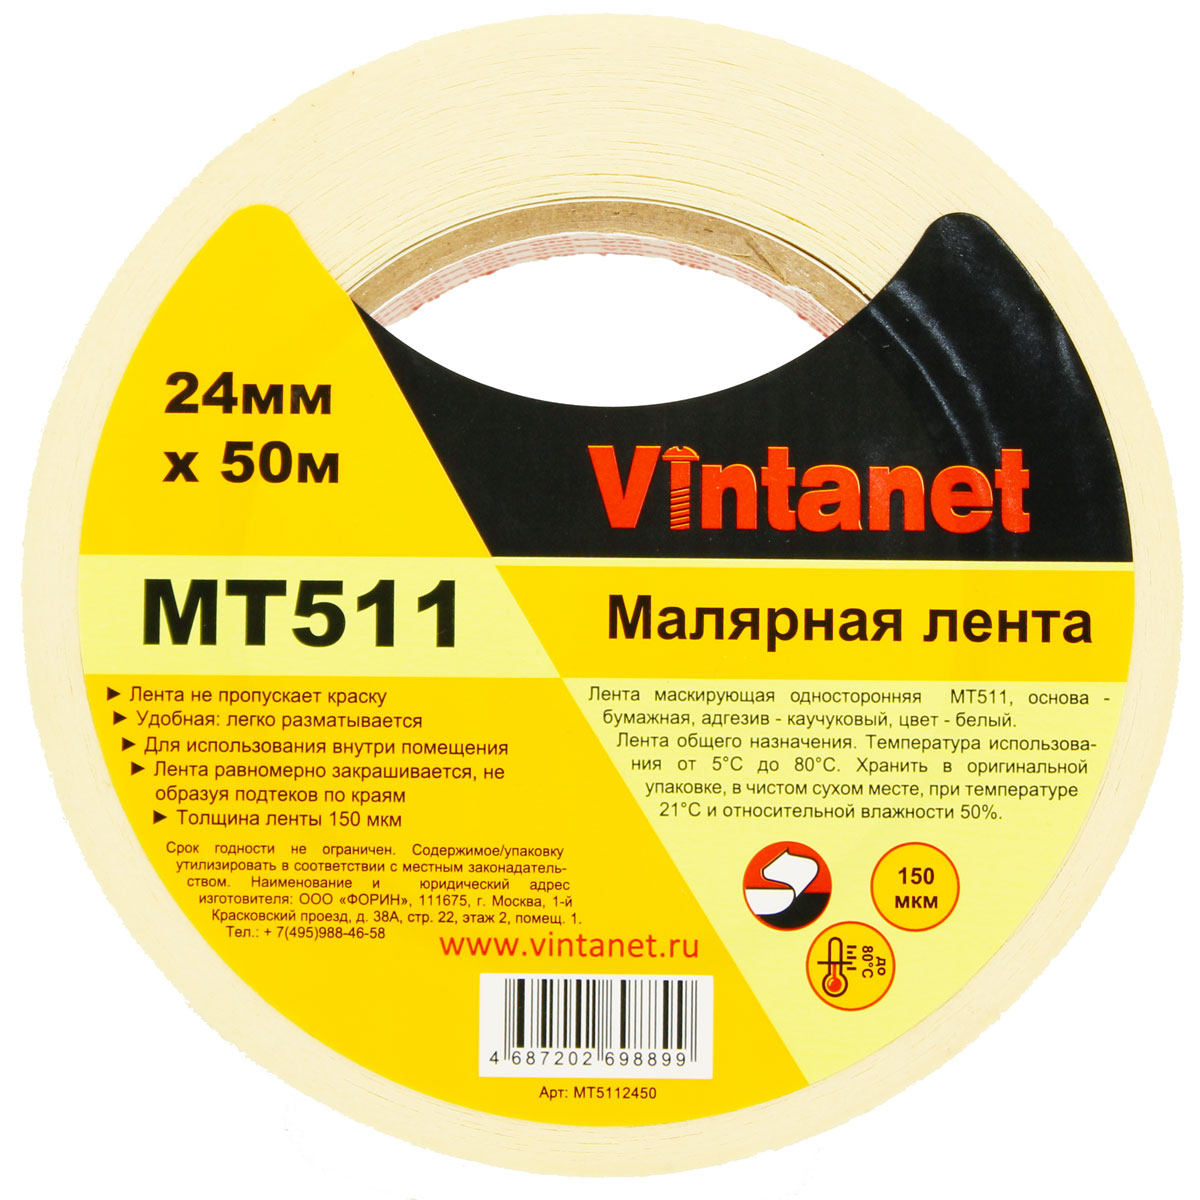 Лента малярная универсальная Vintanet MT511, 80 С, 150 мкм, 24мм х 50м, MT5112450